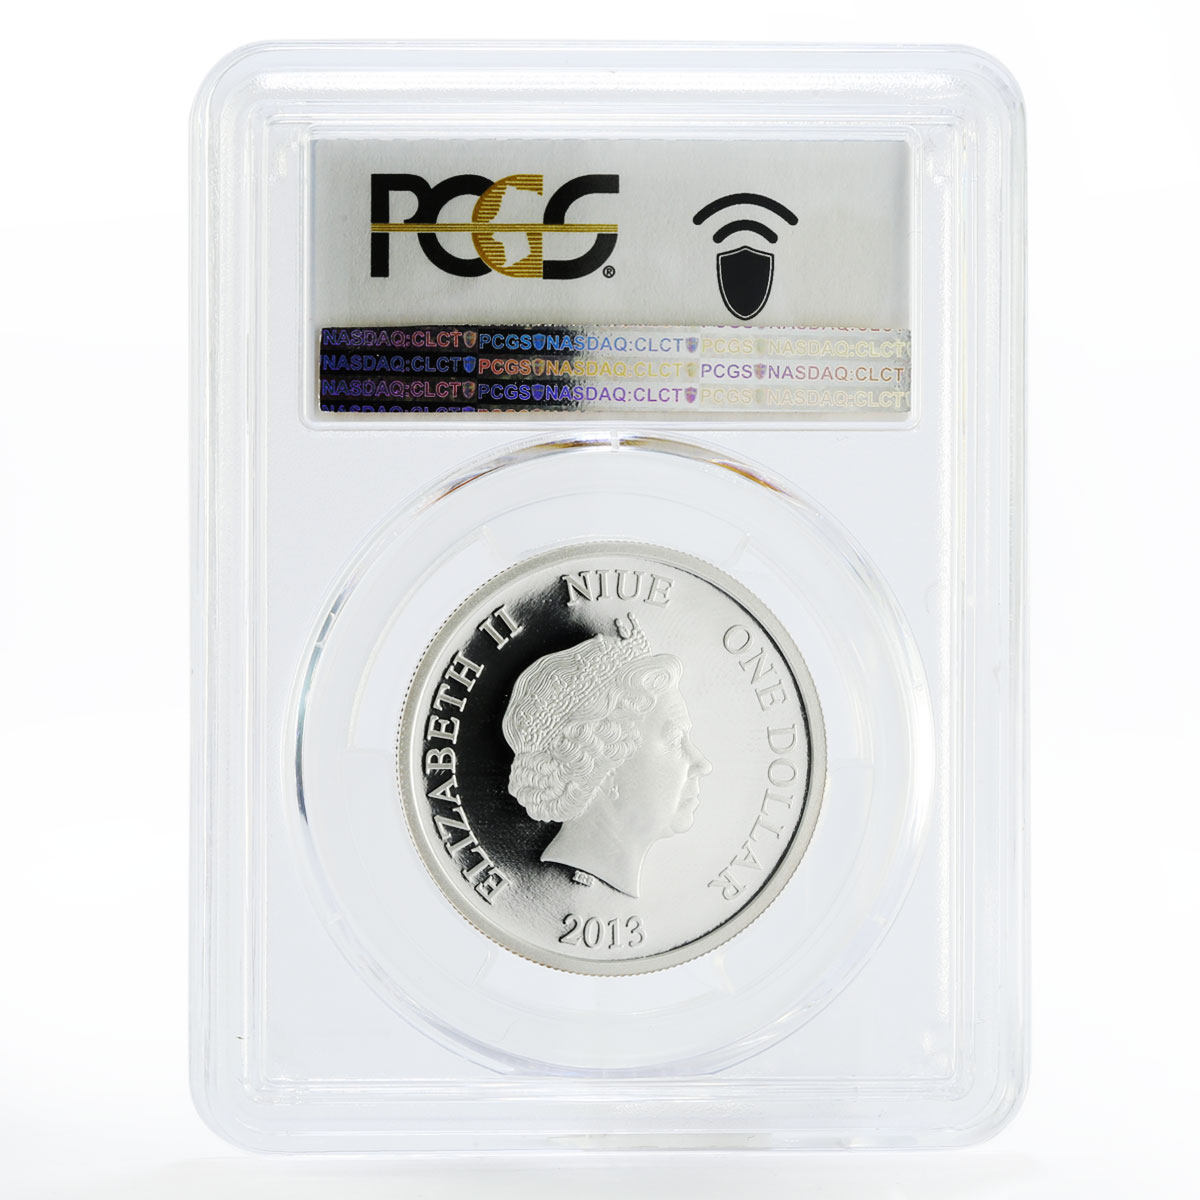 Niue 1 dollar Matt Smith the 11th Doctor Who PR70 PCGS silver coin 2013